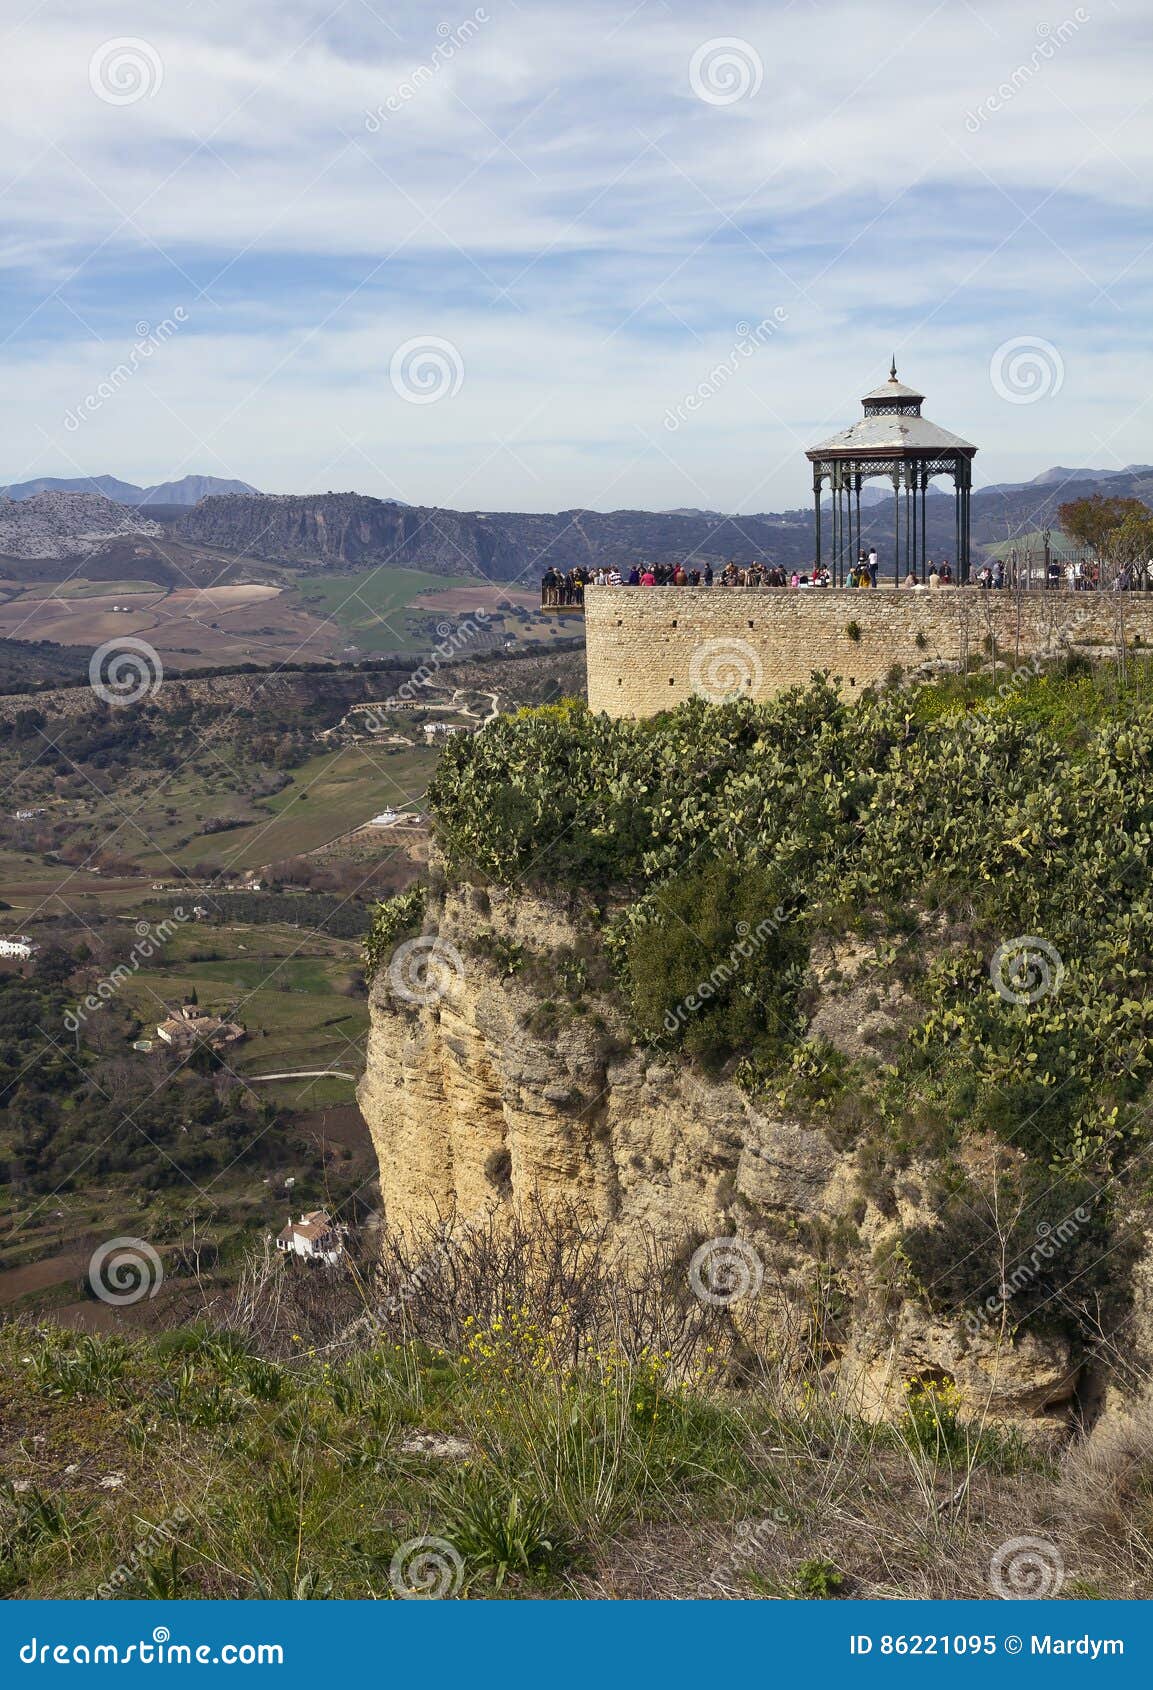 ronda viewpoints of mirador de aldehuela and balcon del cono